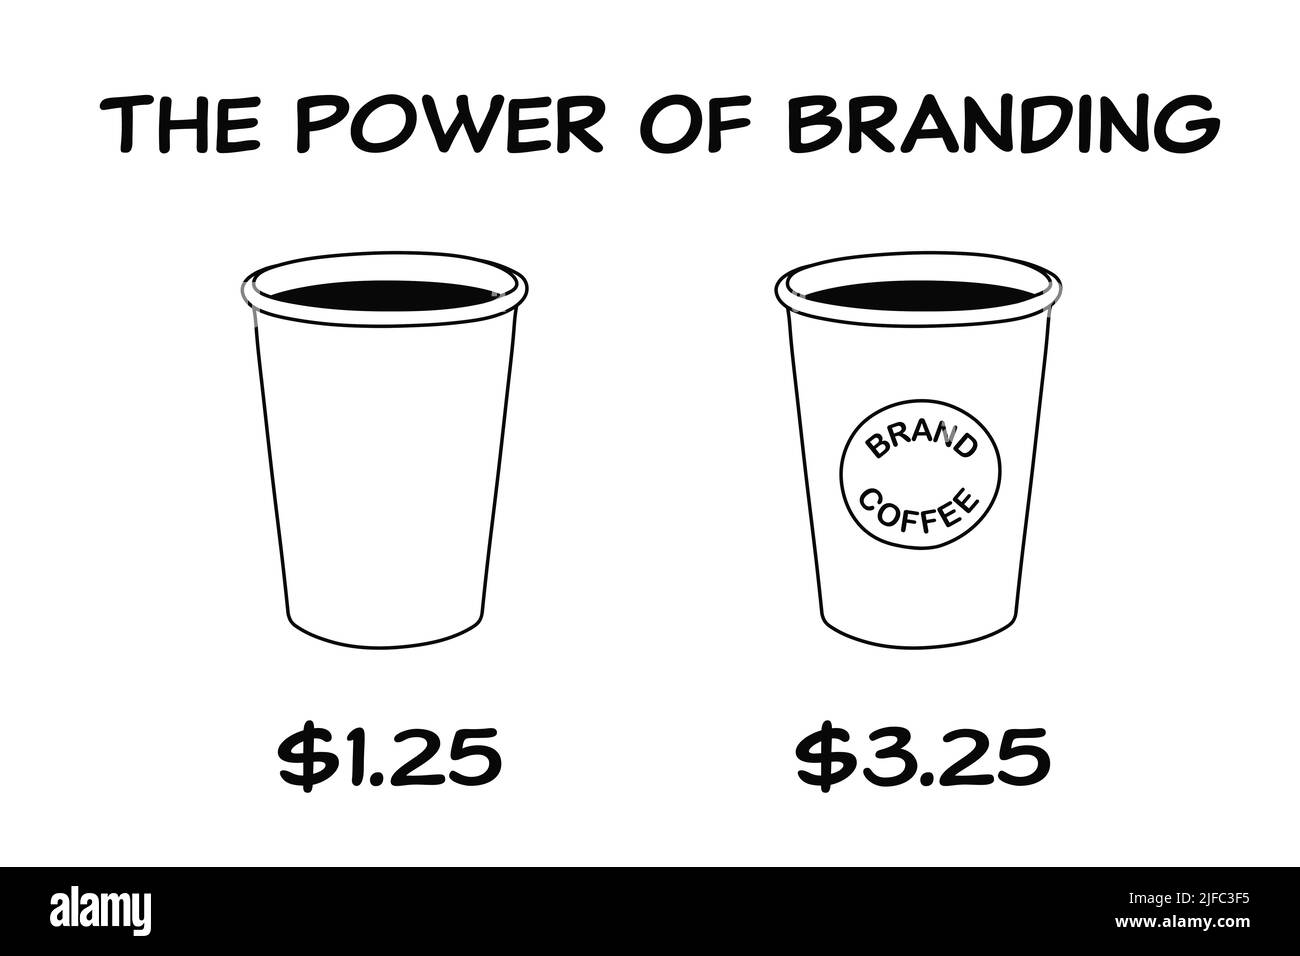 Concept commercial sur la puissance de la marque avec deux tasses de café une marque et une non-marque avec une grande différence de prix. Banque D'Images